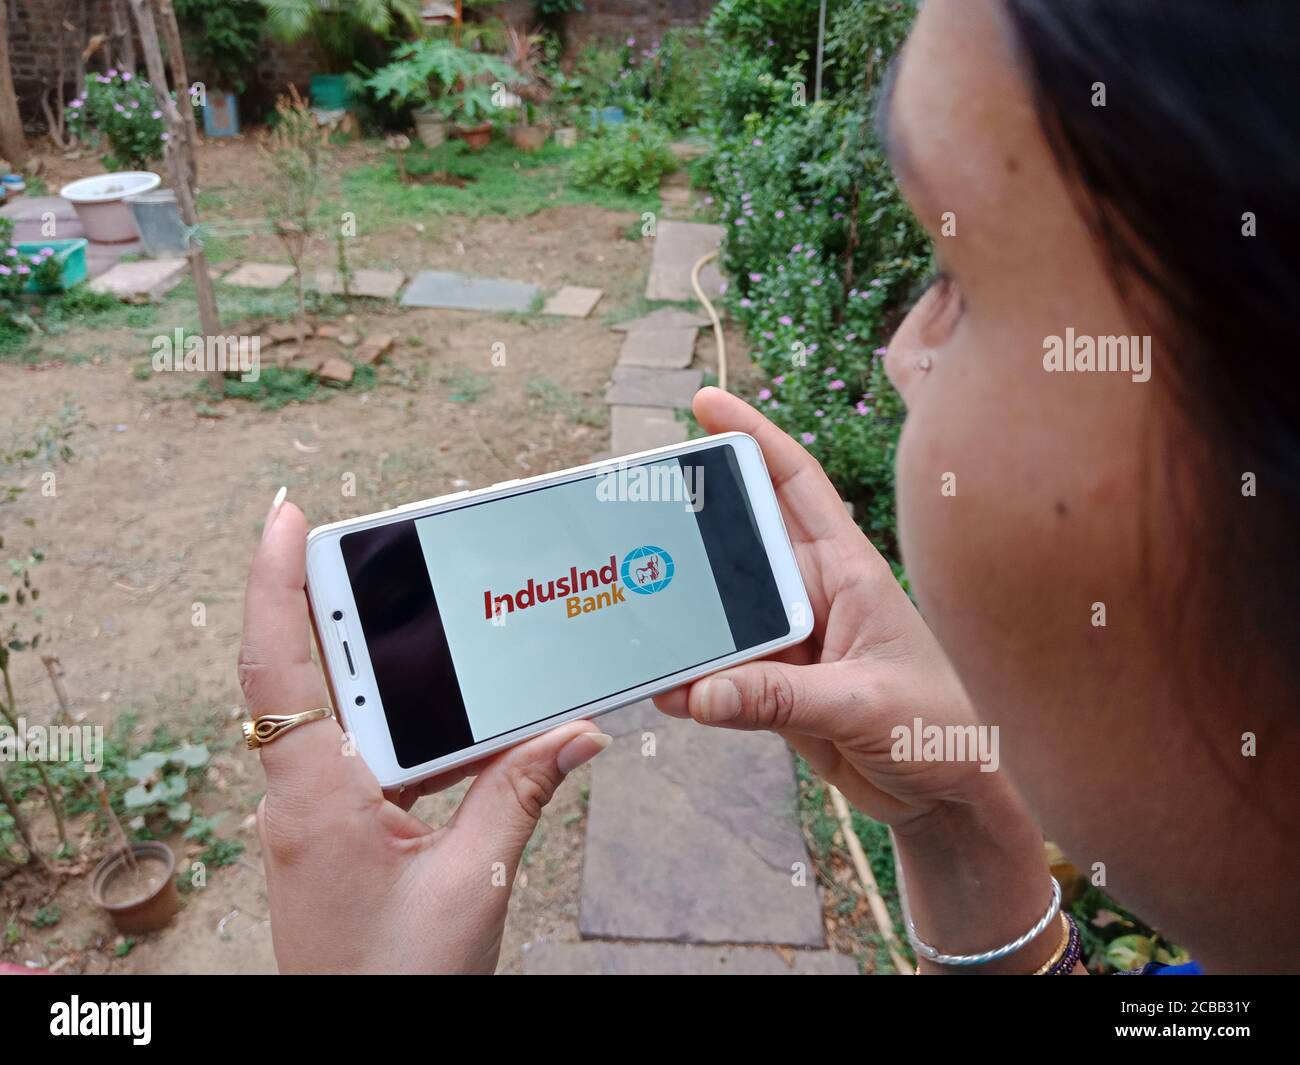 DISTRETTO KATNI, INDIA - 02 GIUGNO 2020: Una donna indiana che tiene lo smartphone con visualizzazione del logo Infusid Bank Limited sullo schermo, educat bancario moderno Foto Stock